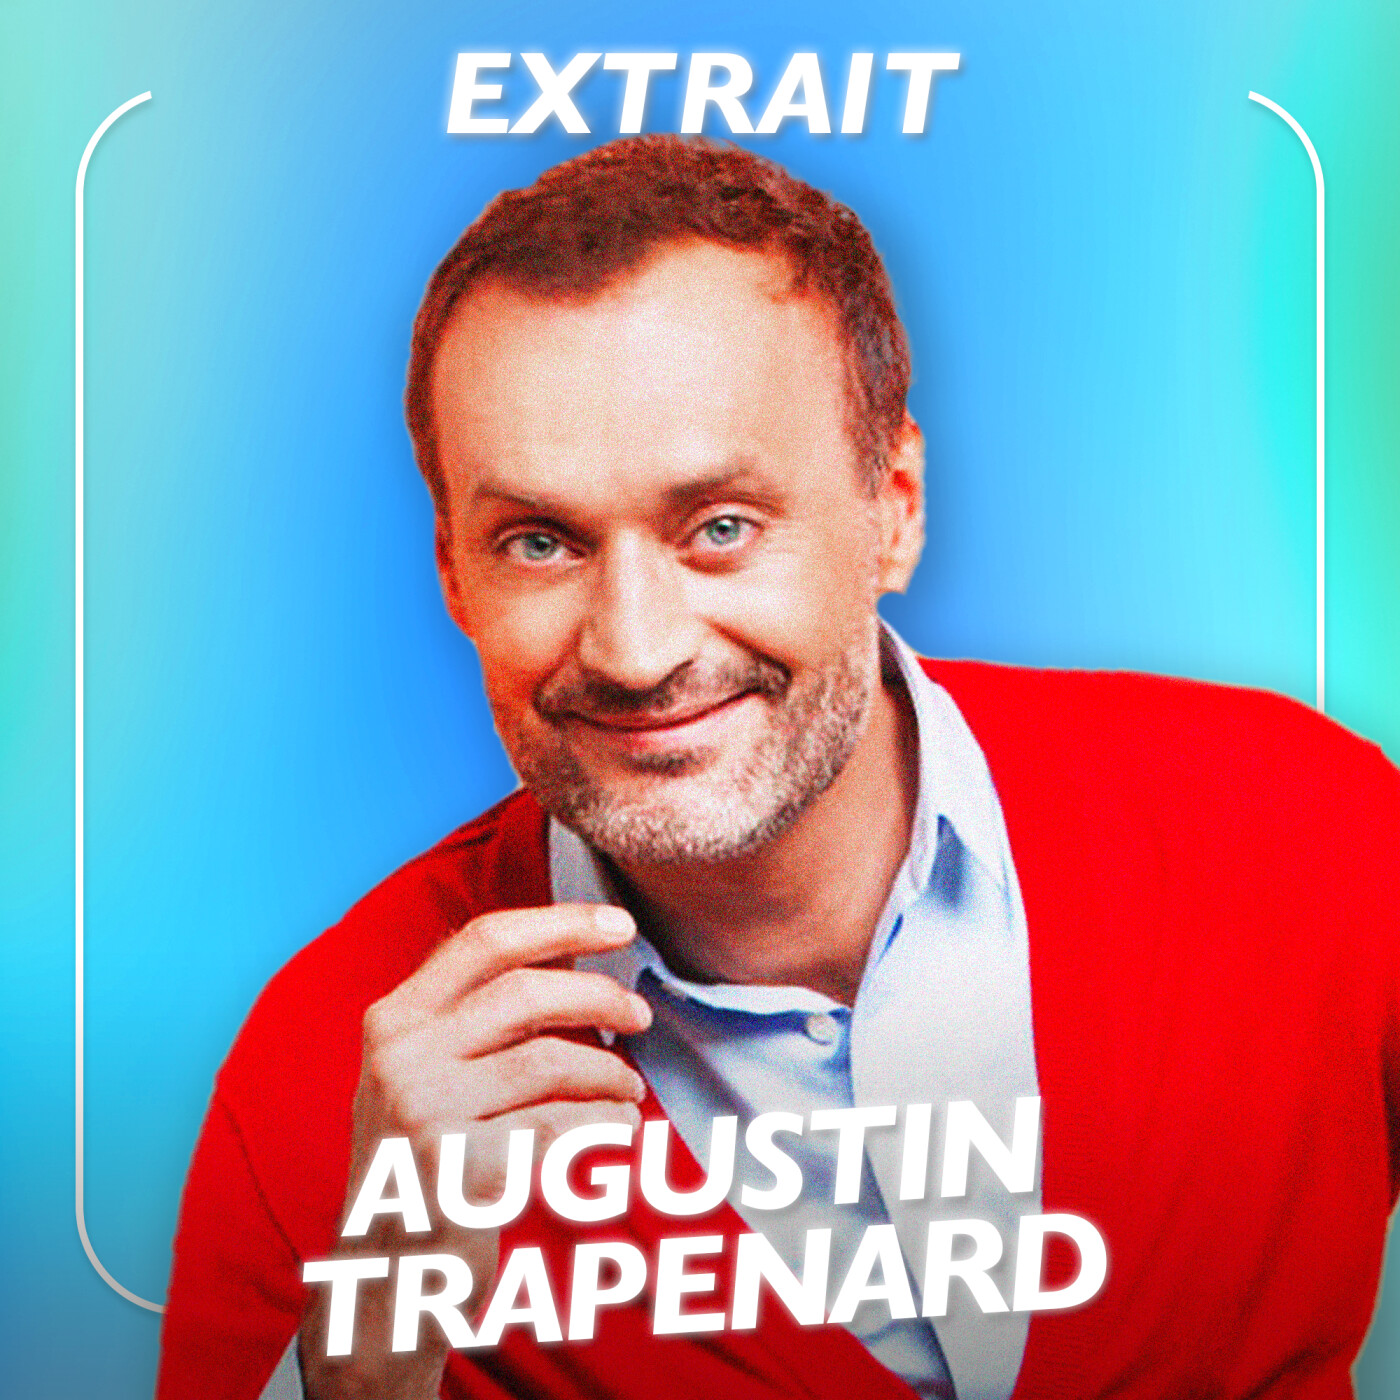 [EXTRAIT] Augustin Trapenard, Journaliste - Comment faire une bonne interview  ?